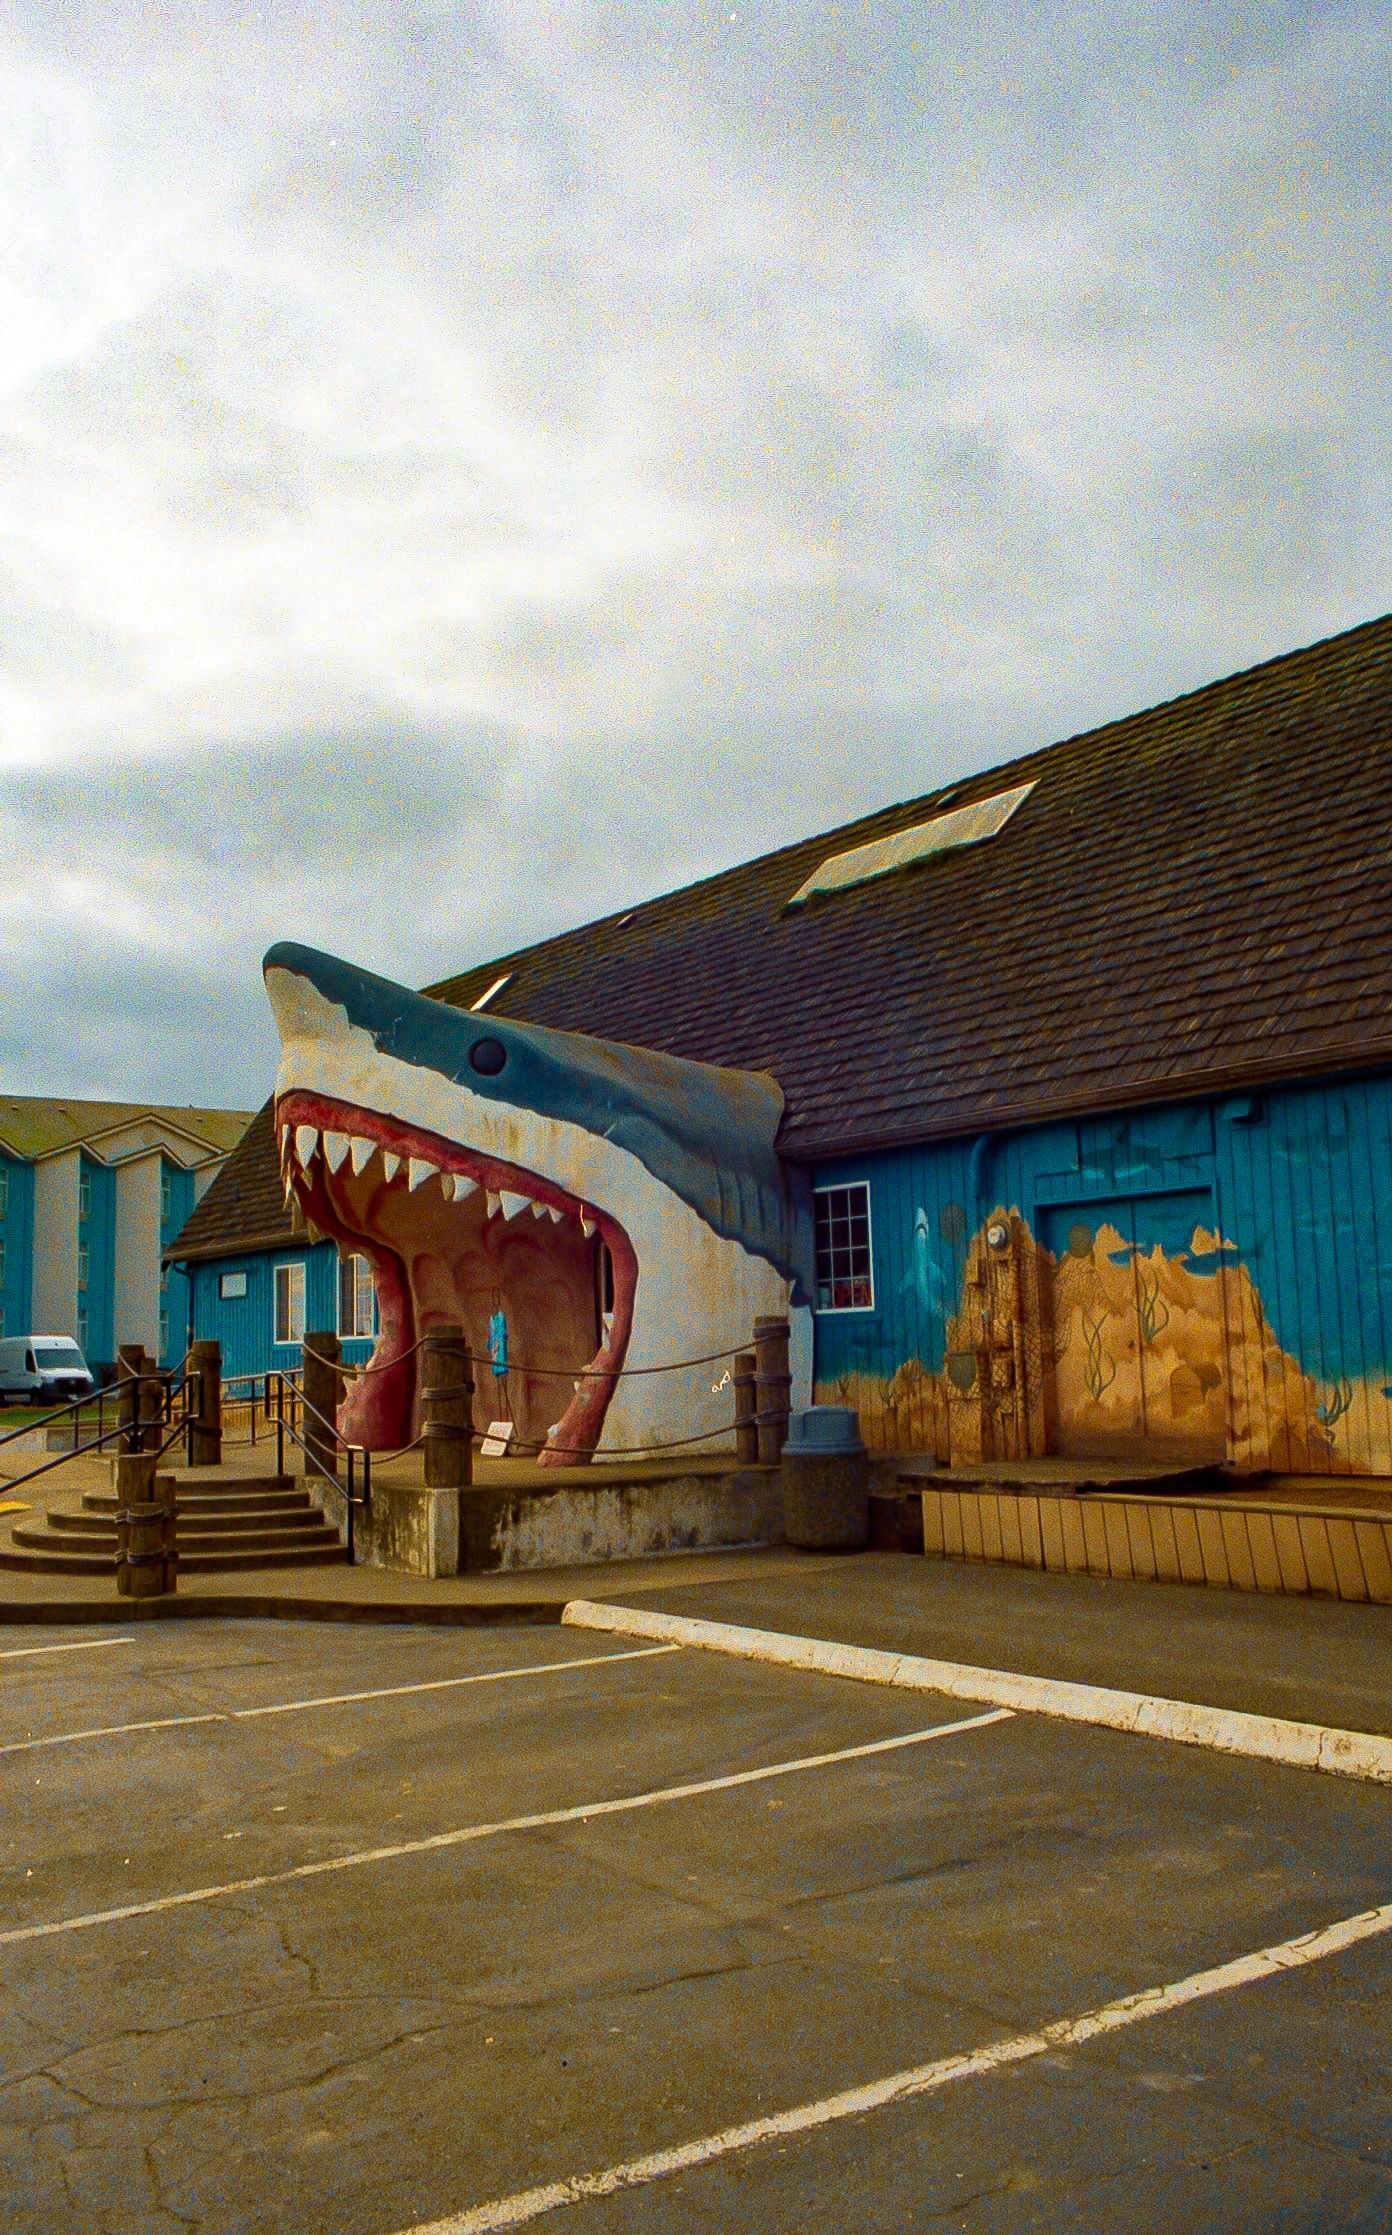 Shark Shop, Washington
Size: 8x10"
Professional Matte Paper
$25.00 (CAD)